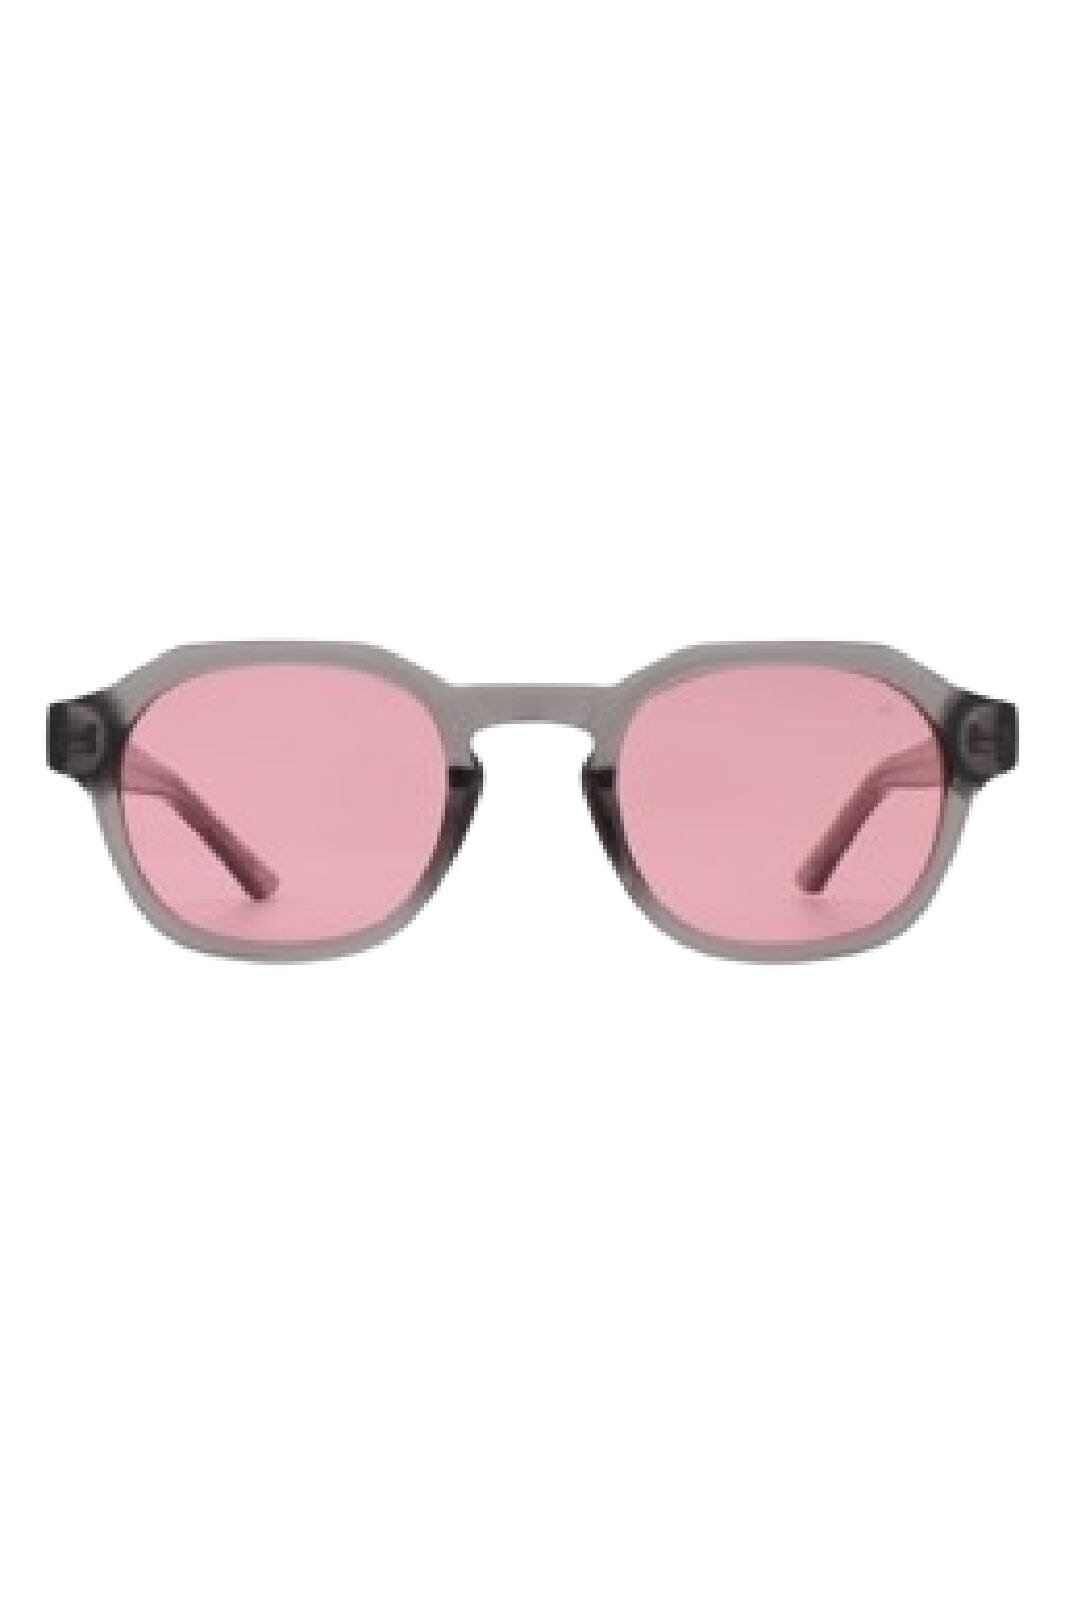 A. Kjærbede - Zan - Grey Transparent Solbriller 